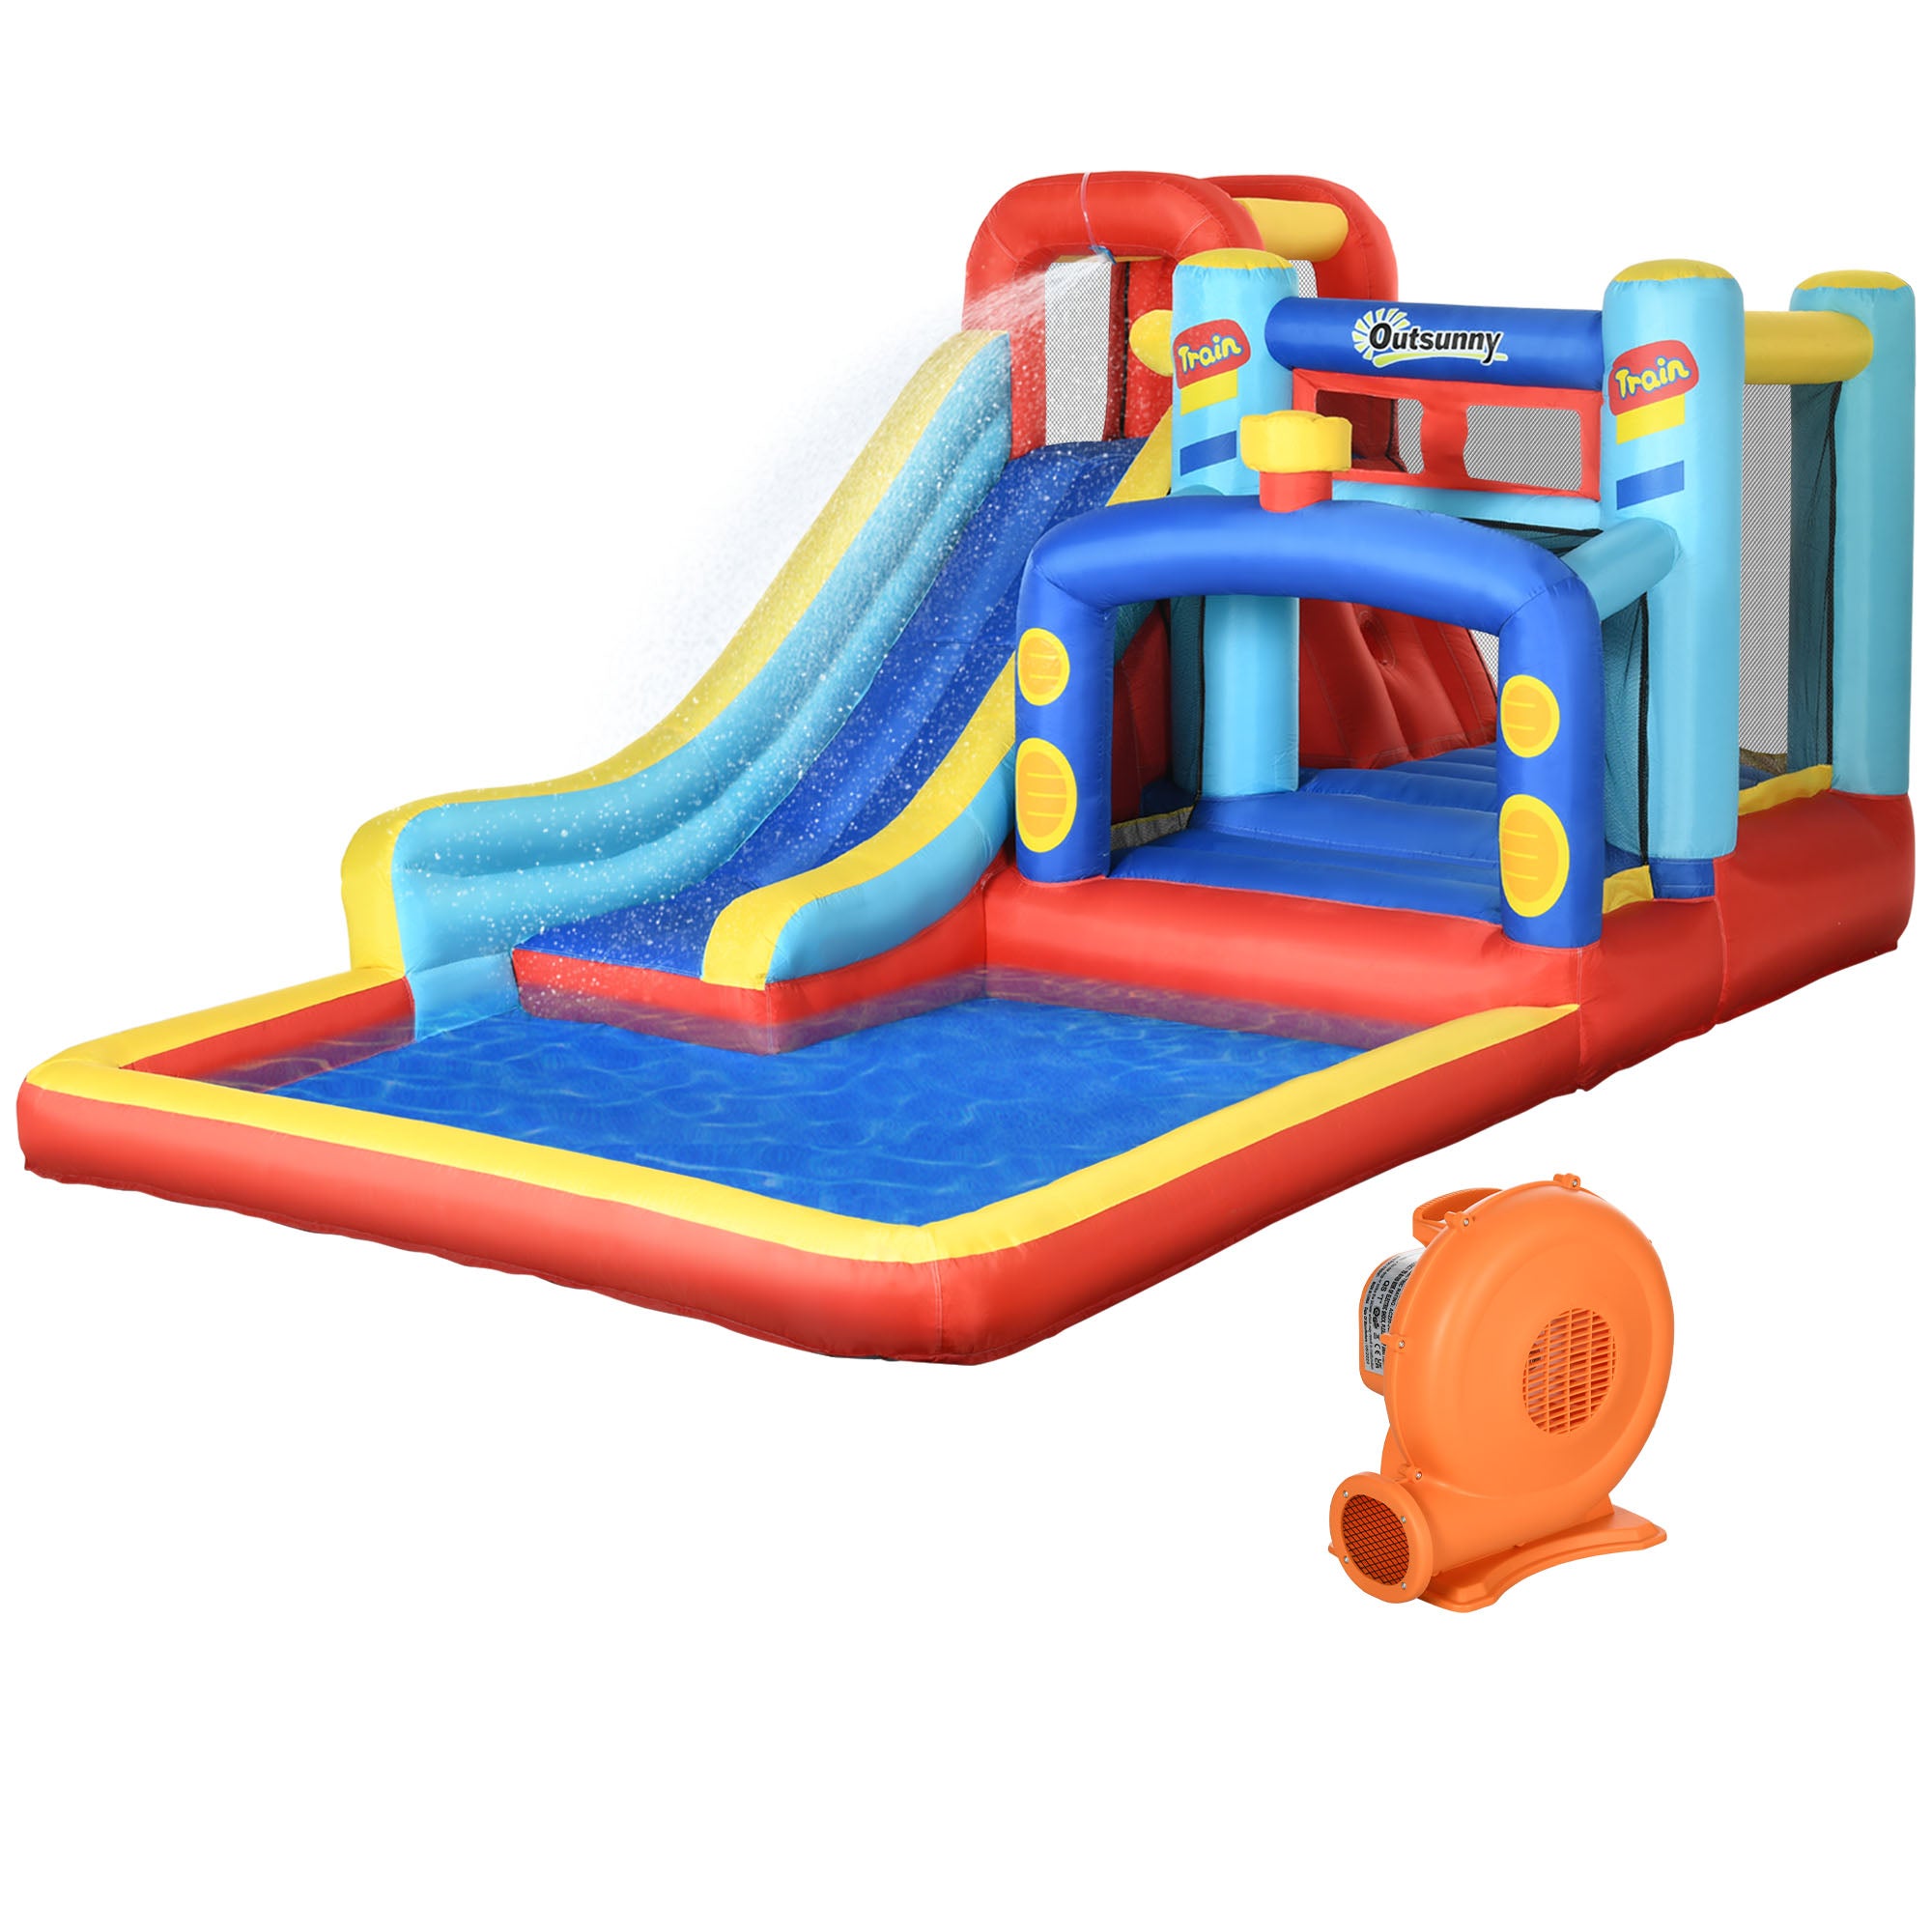 Outsunny 4 in 1 Kids Bouncy Castle W/ Slide Pool Trampoline Climbing Wall Blower  | TJ Hughes